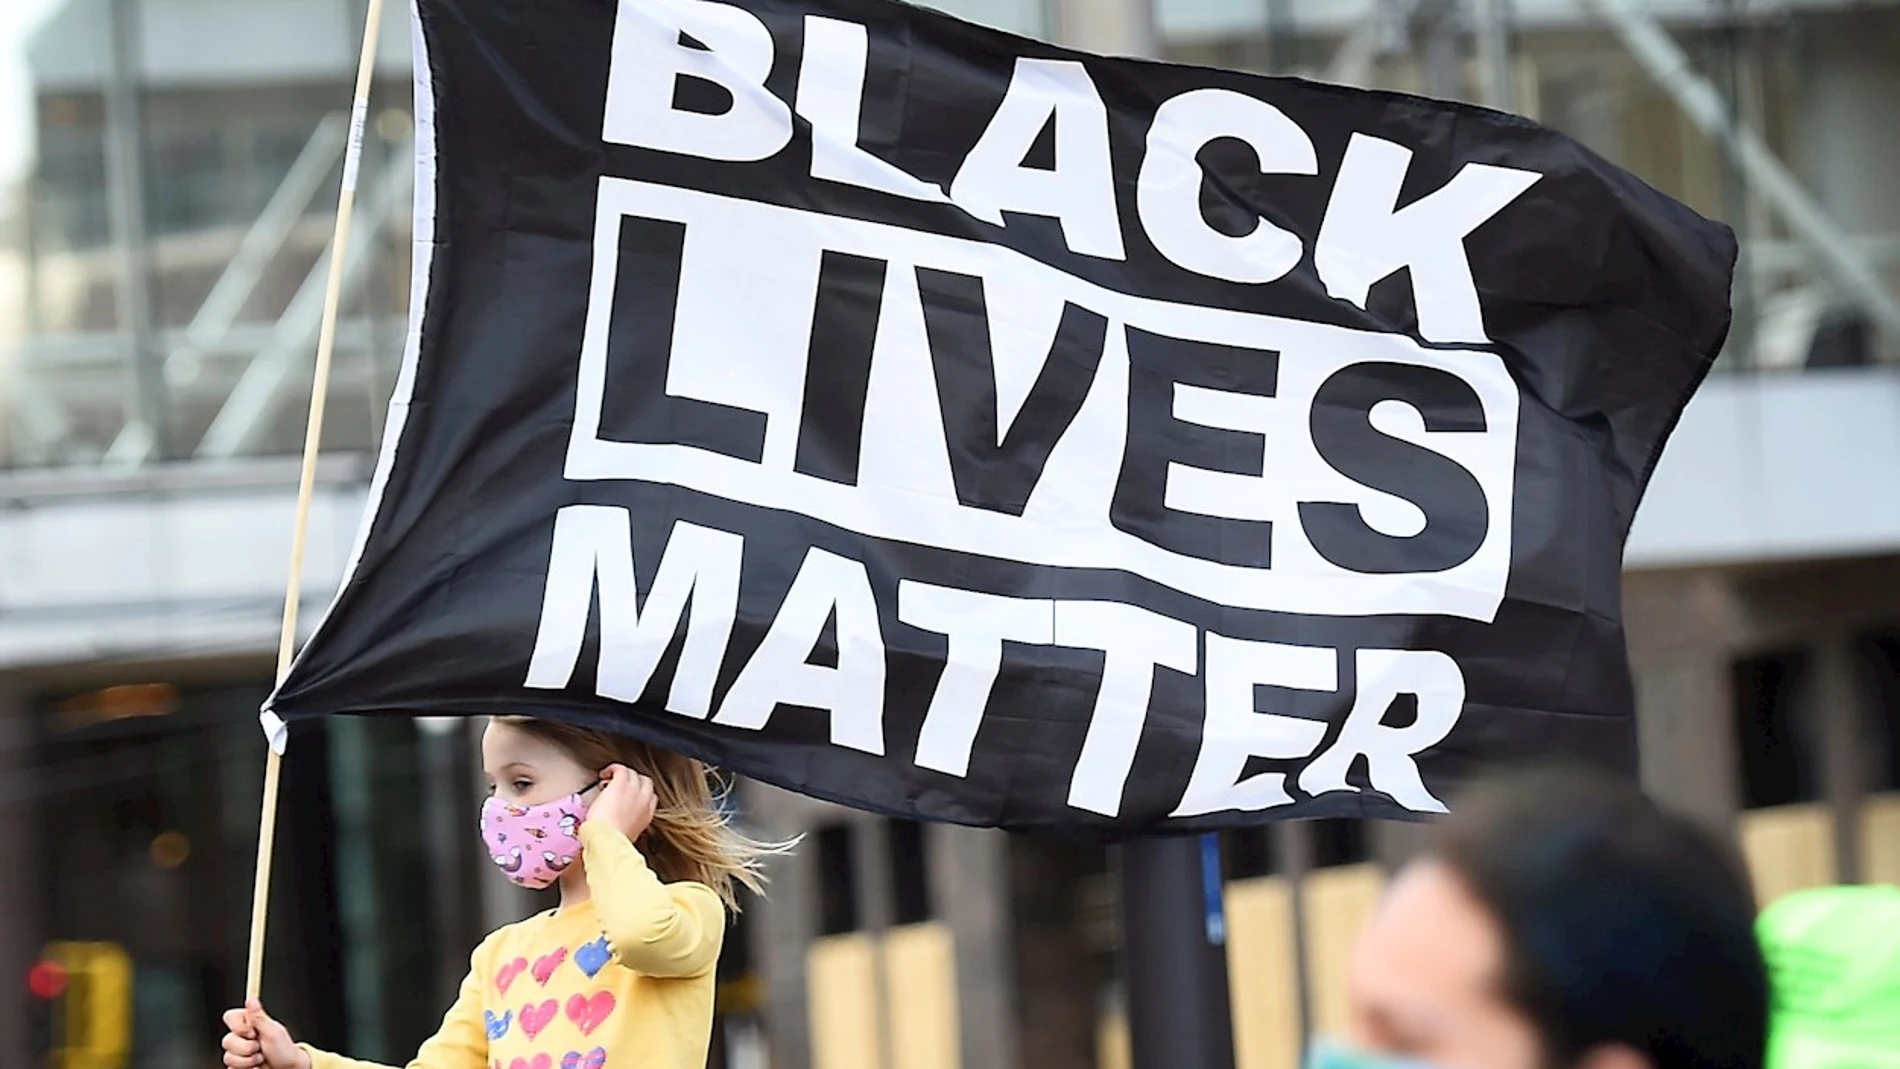 Una niña sostiene una bandera en la que se lee &quot;Black Lives Matter&quot;, el eslogan utilizado en las protestas motivadas por la muerte de George Floyd